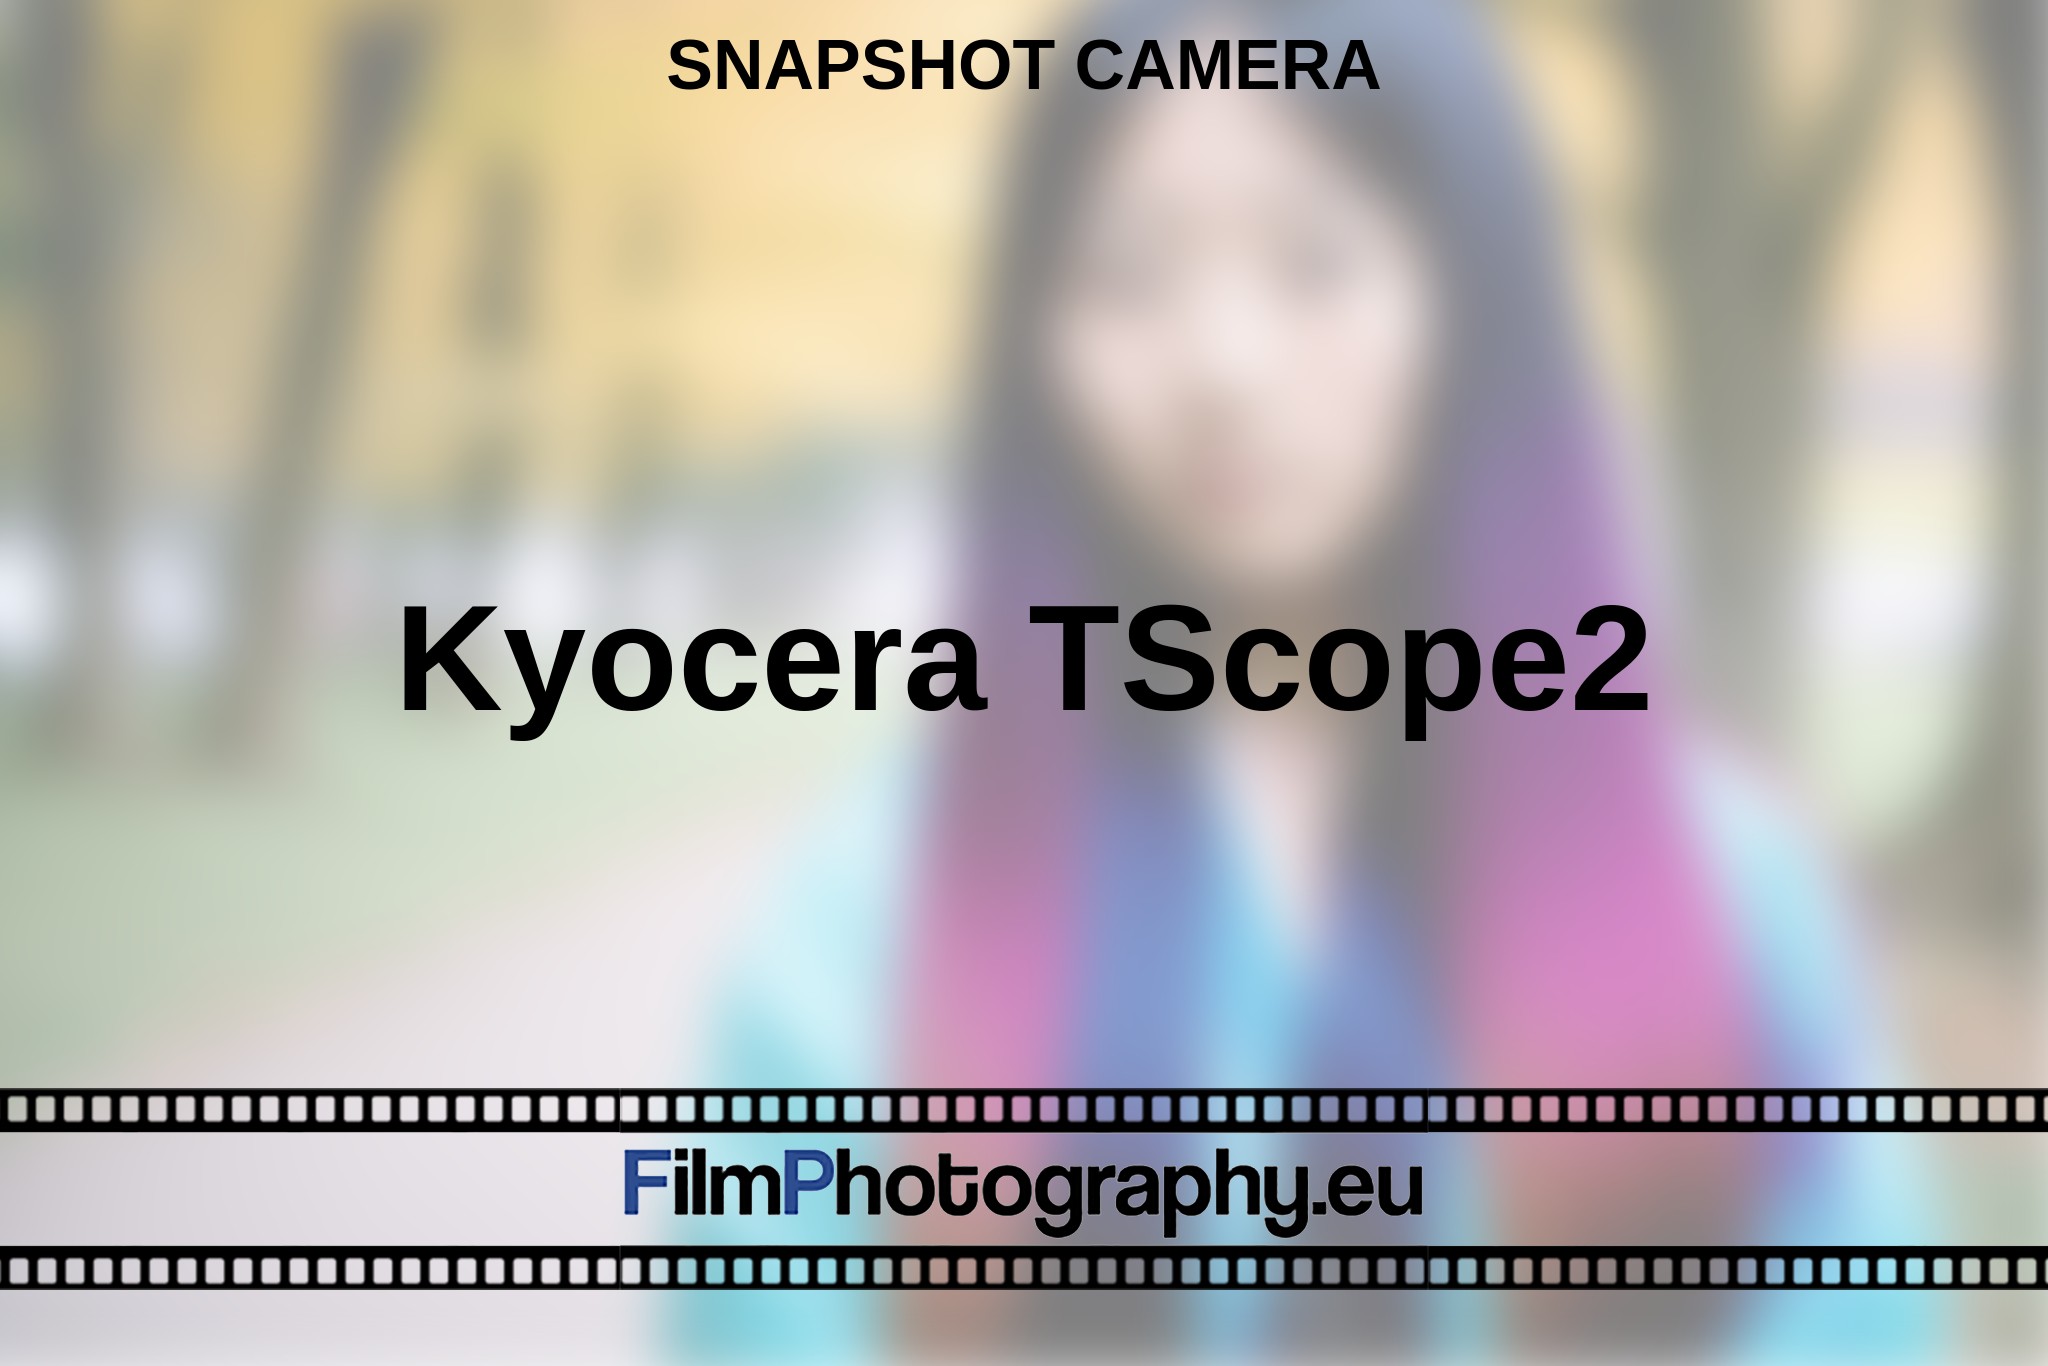 kyocera-tscope2-snapshot-camera-en-bnv.jpg